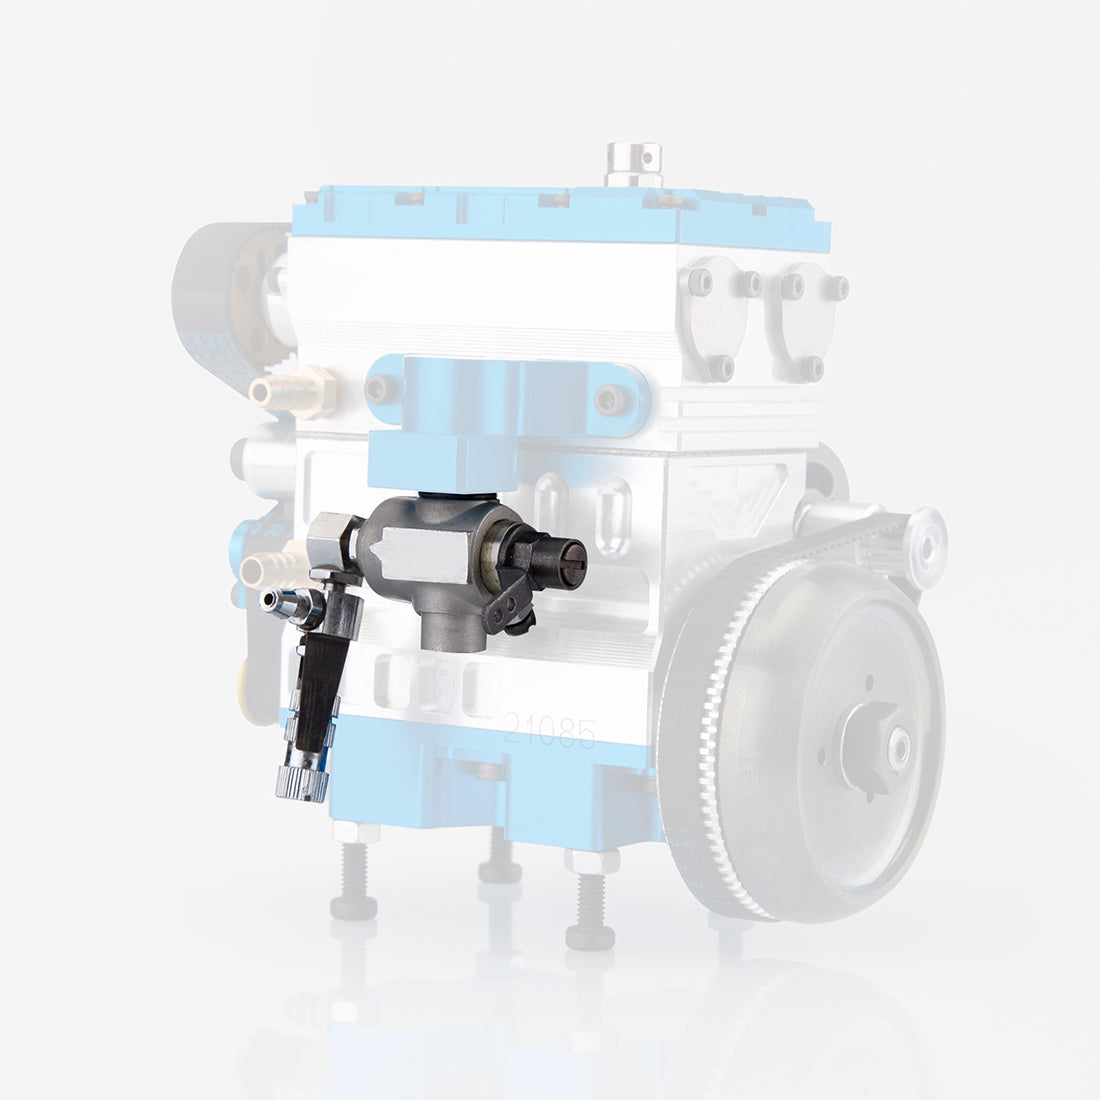 Carburetor for NR-200 Methanol & Gasoline Engine Models - stirlingkit